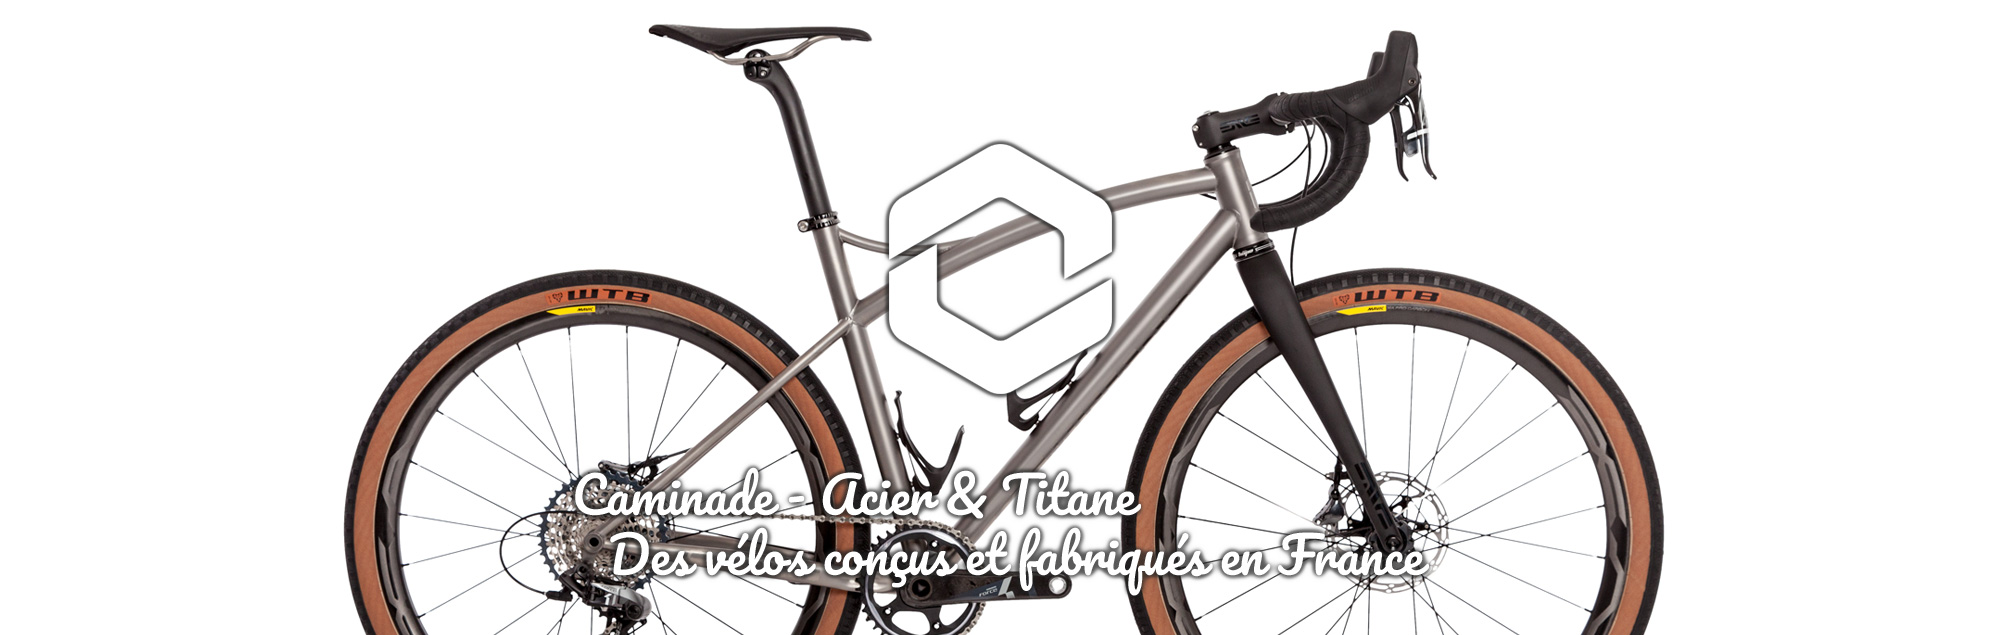 Caminade - Acier & Titane : Des vélos conçus et fabriqués en France